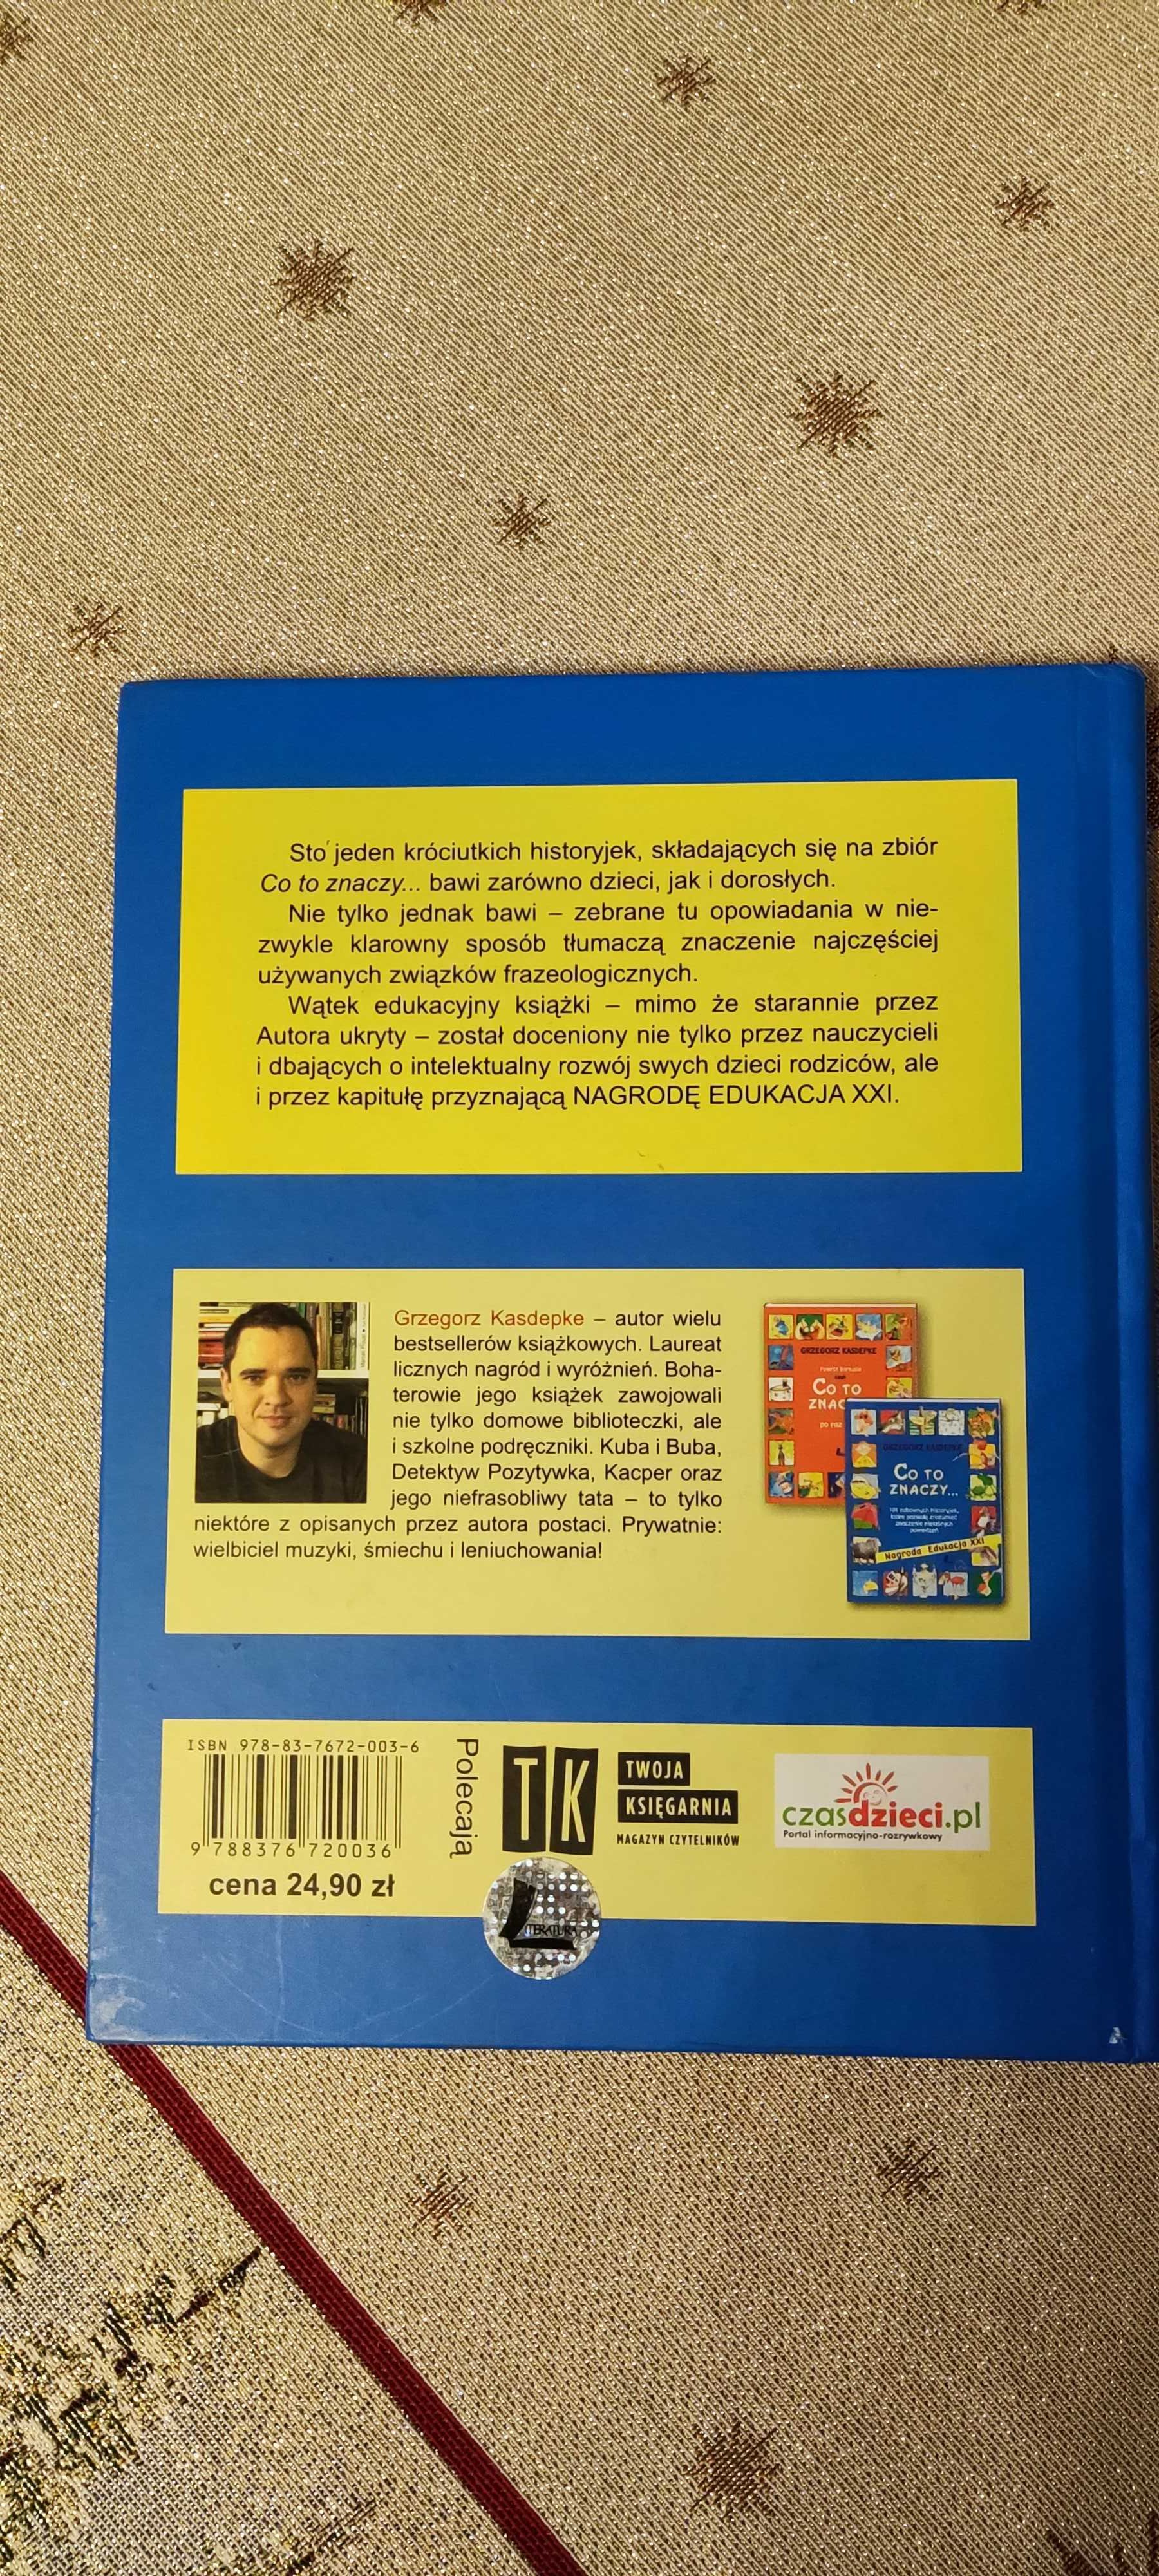 Książka dla dzieci "CO TO ZNACZY  - 101" Grzegorz Kasdepke